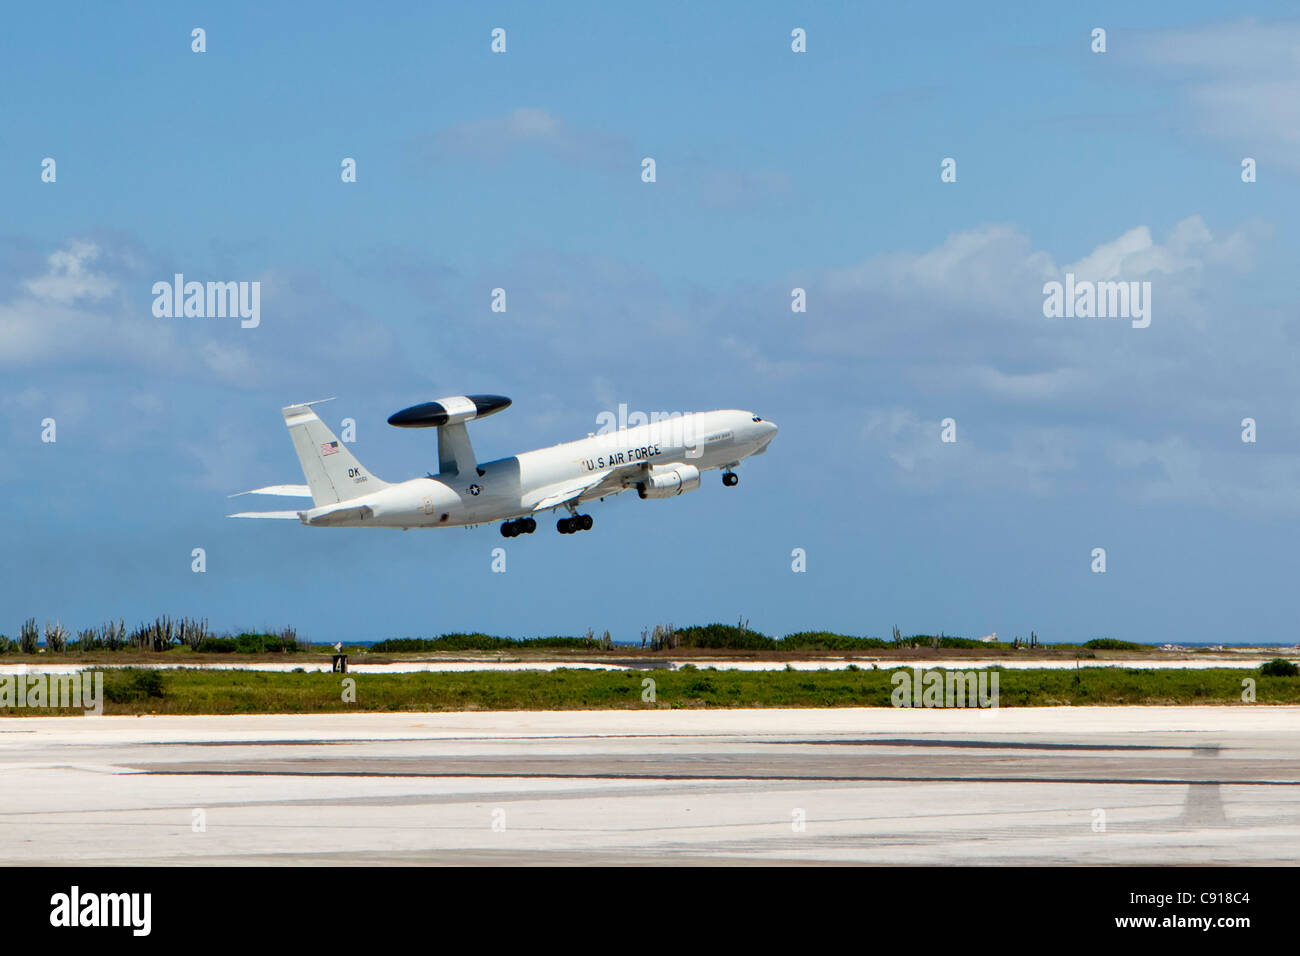 Curaçao, île des Caraïbes, indépendante des Pays-Bas depuis 2010. Willemstad. Avion AWAC de l'US Air Force de décoller. Banque D'Images